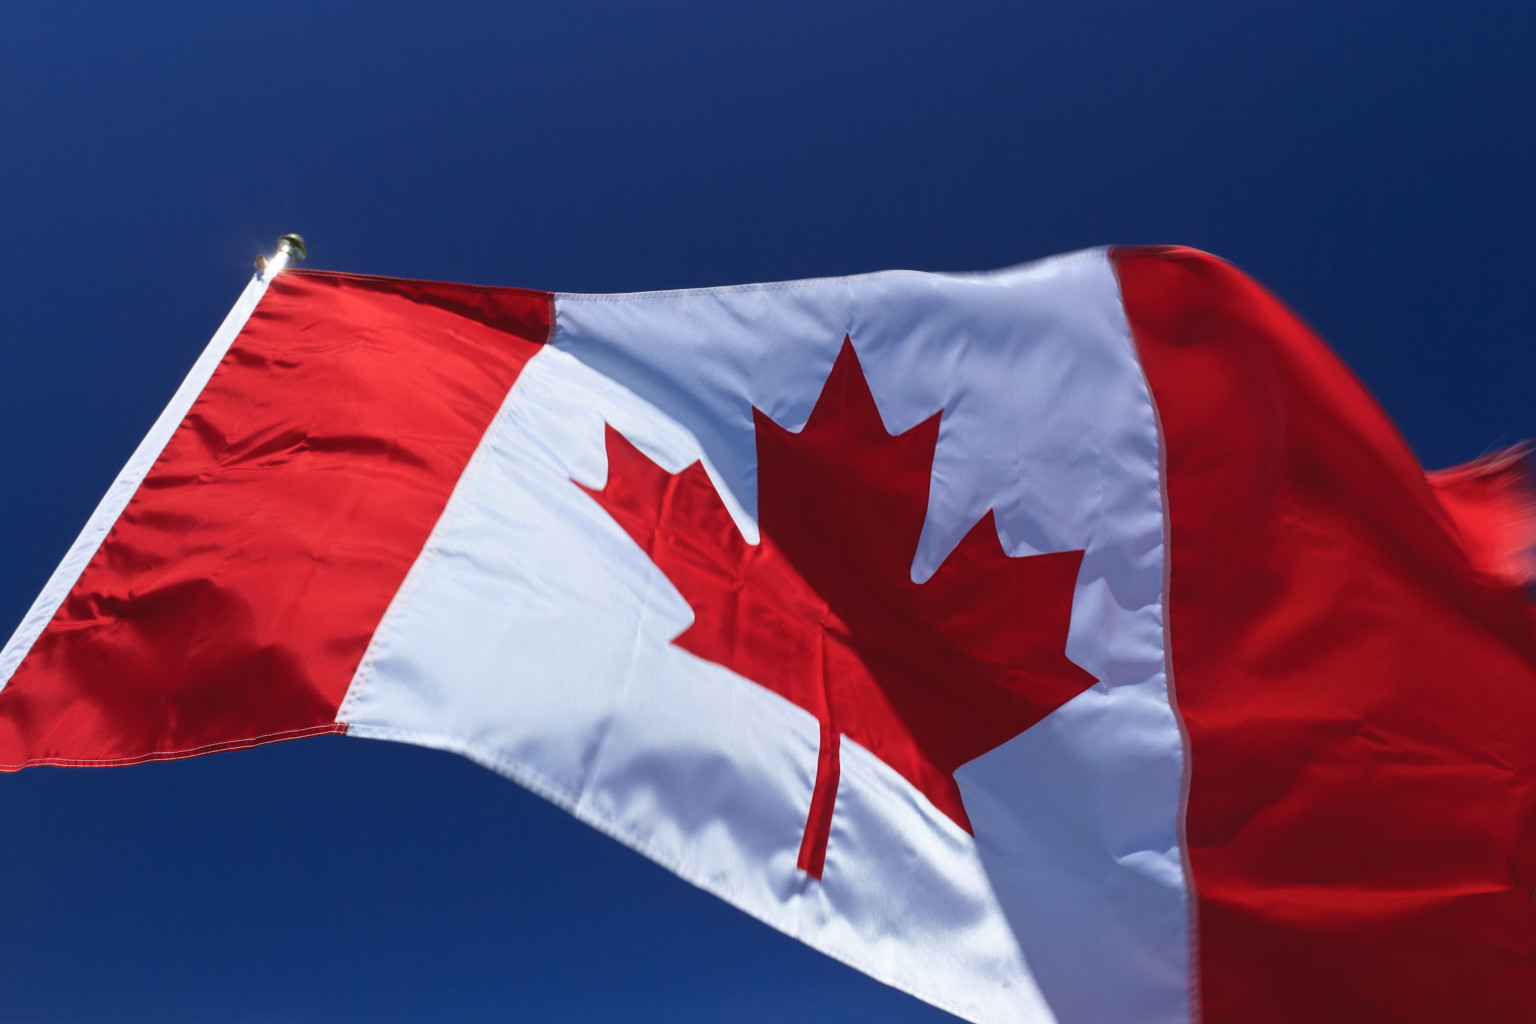 Περίπου 5,4 εκατομμύρια Καναδοί θα αγοράσουν νόμιμα κάνναβη το 2018